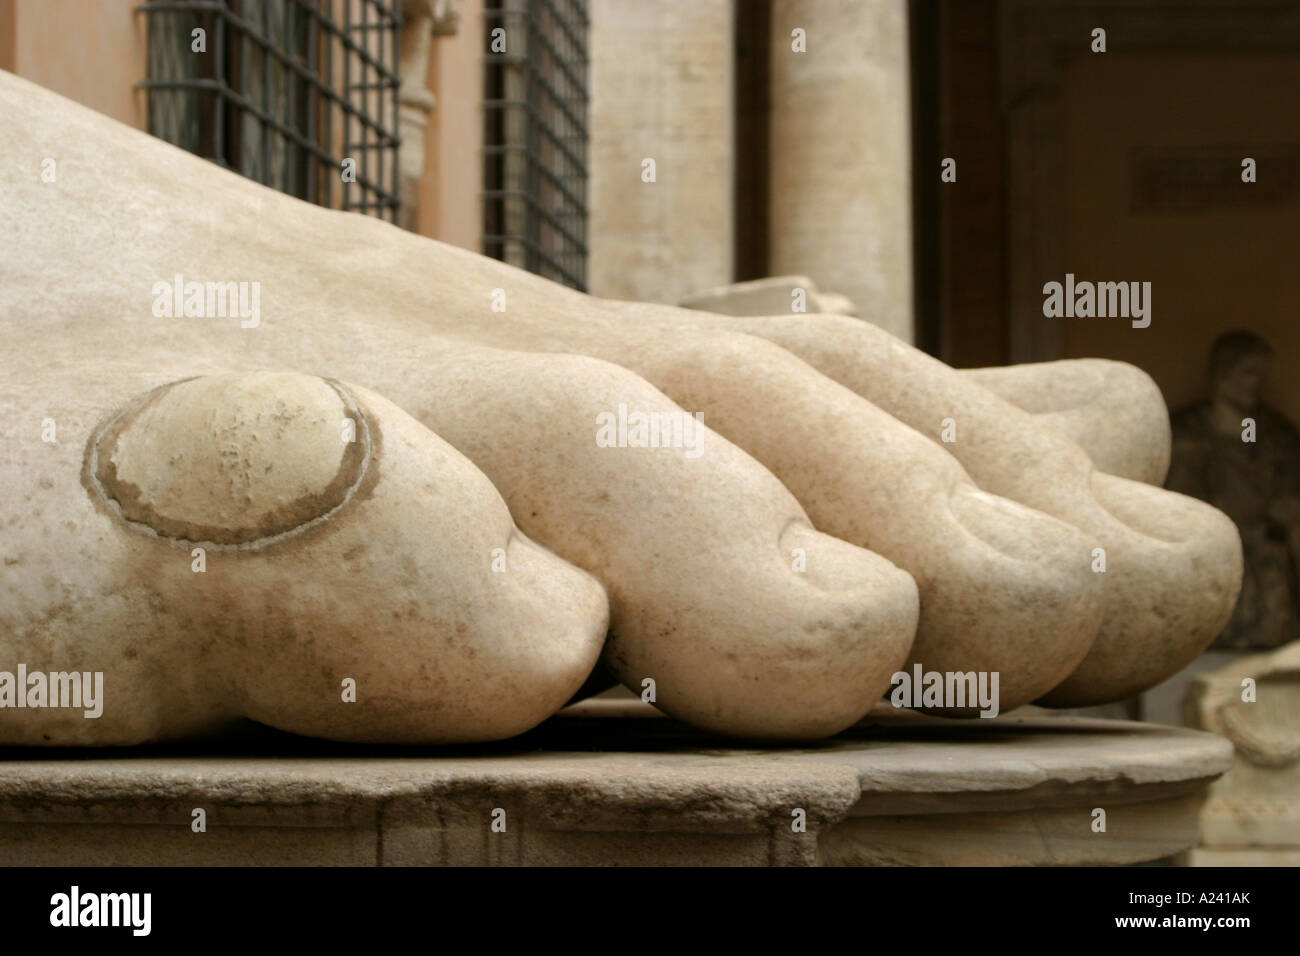 Le maïs "plaster" sur le pied du marbre désincarnée statue géante de l'empereur Constantin dans le Palais des Conservateurs à Rome Banque D'Images